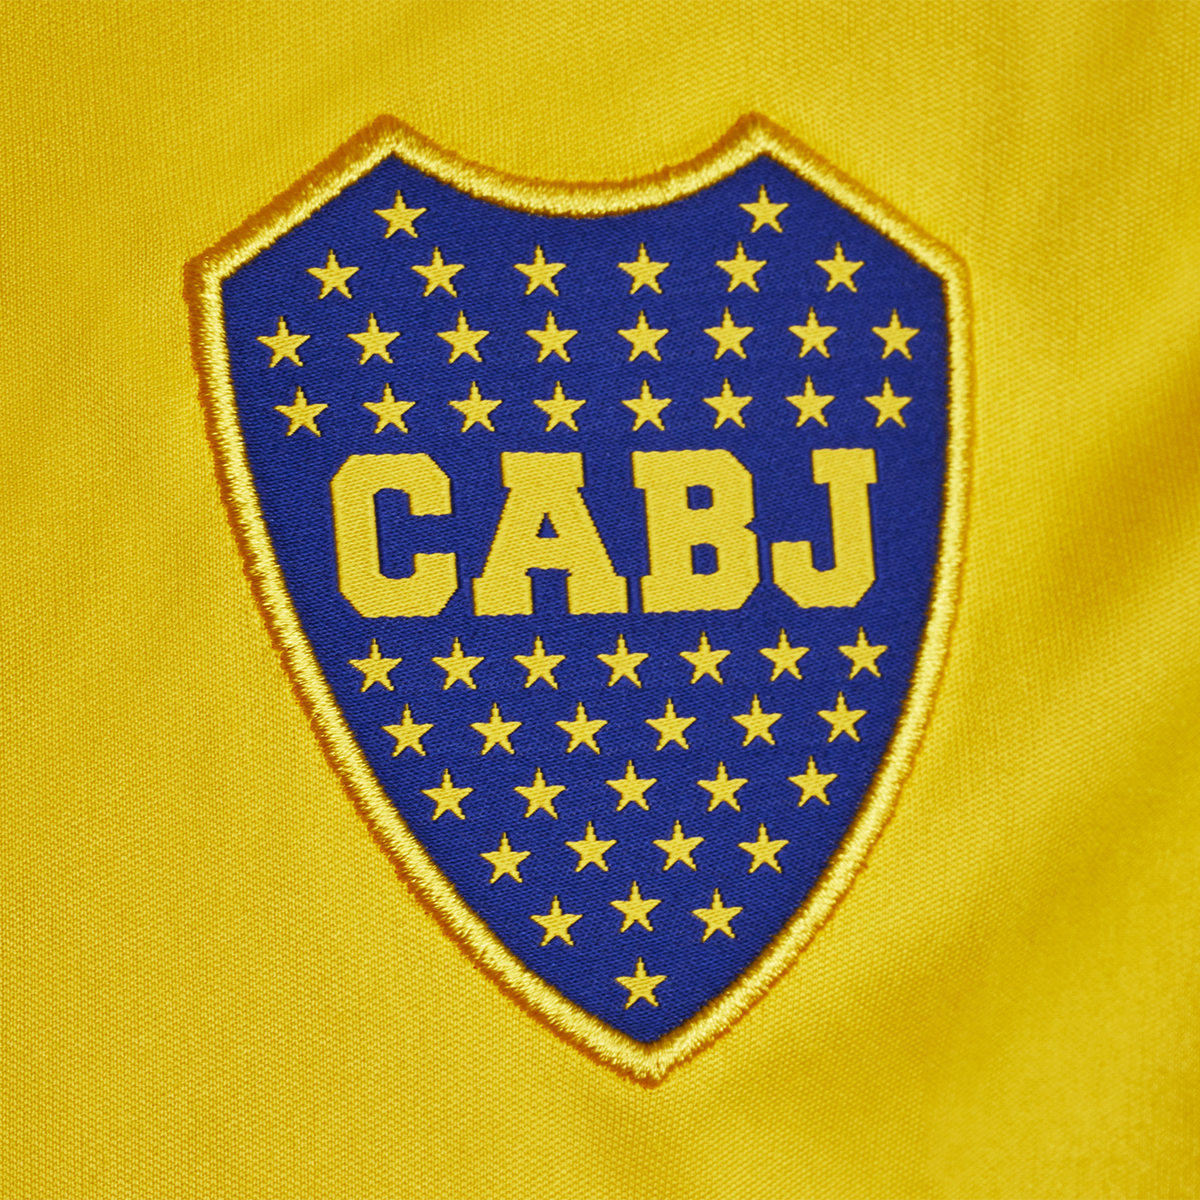 Camiseta adidas 20/21 Boca Juniors,  image number null